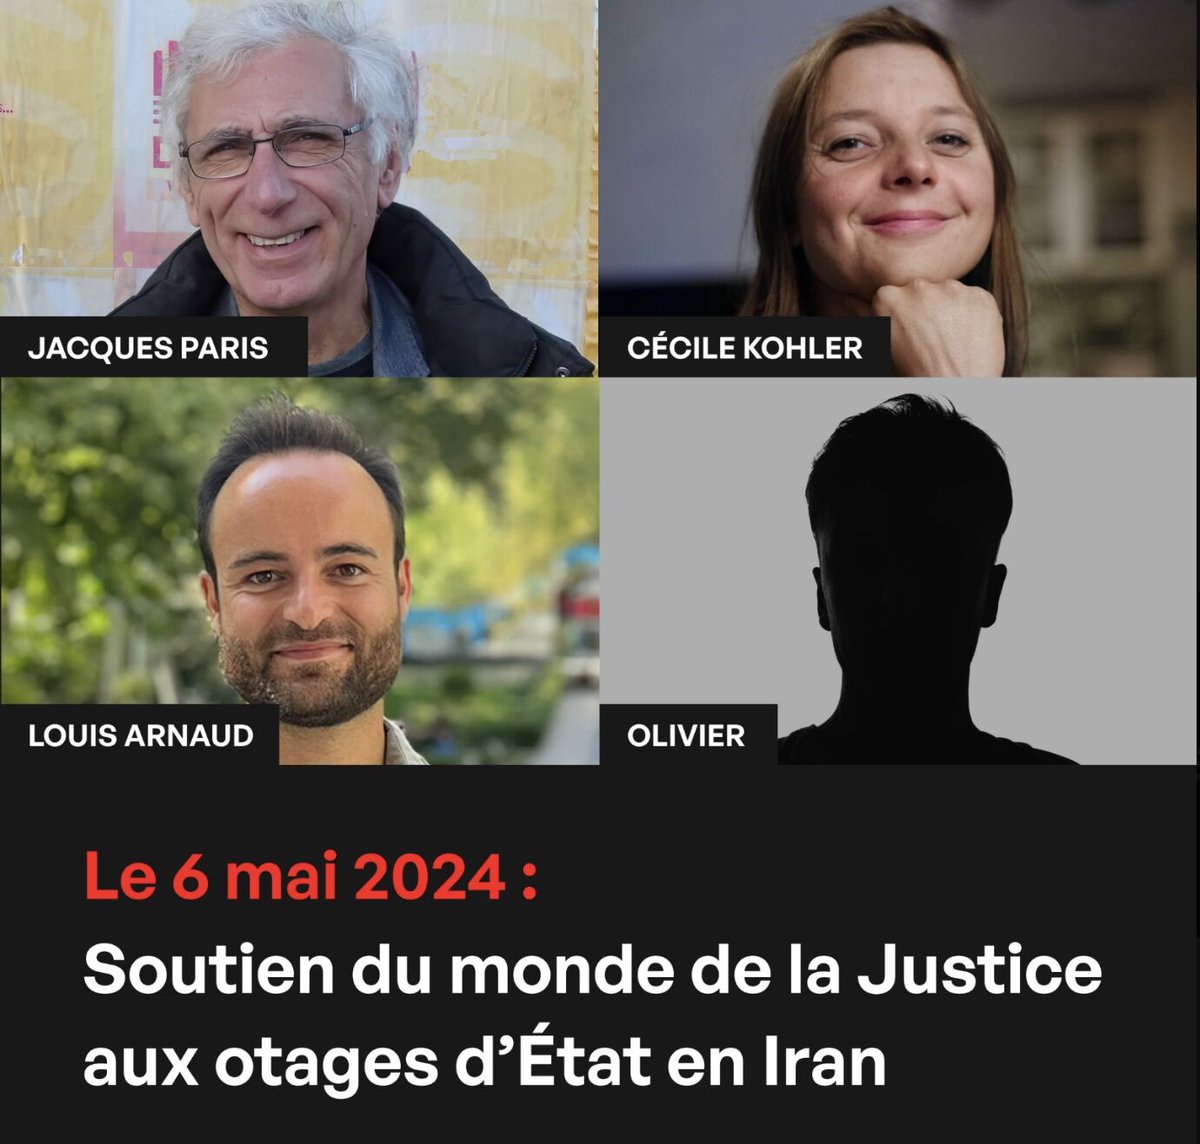 En ce 6 mai, la @Conf_Batonniers se mobilise pour soutenir les familles des 4 otages détenus arbitrairement en Iran et réclamer leur libération !
Retrouvez la motion adoptée par le Bureau de la Conférence : urlz.fr/qzle
#freececile #freejacques #freelouis #freeolivier